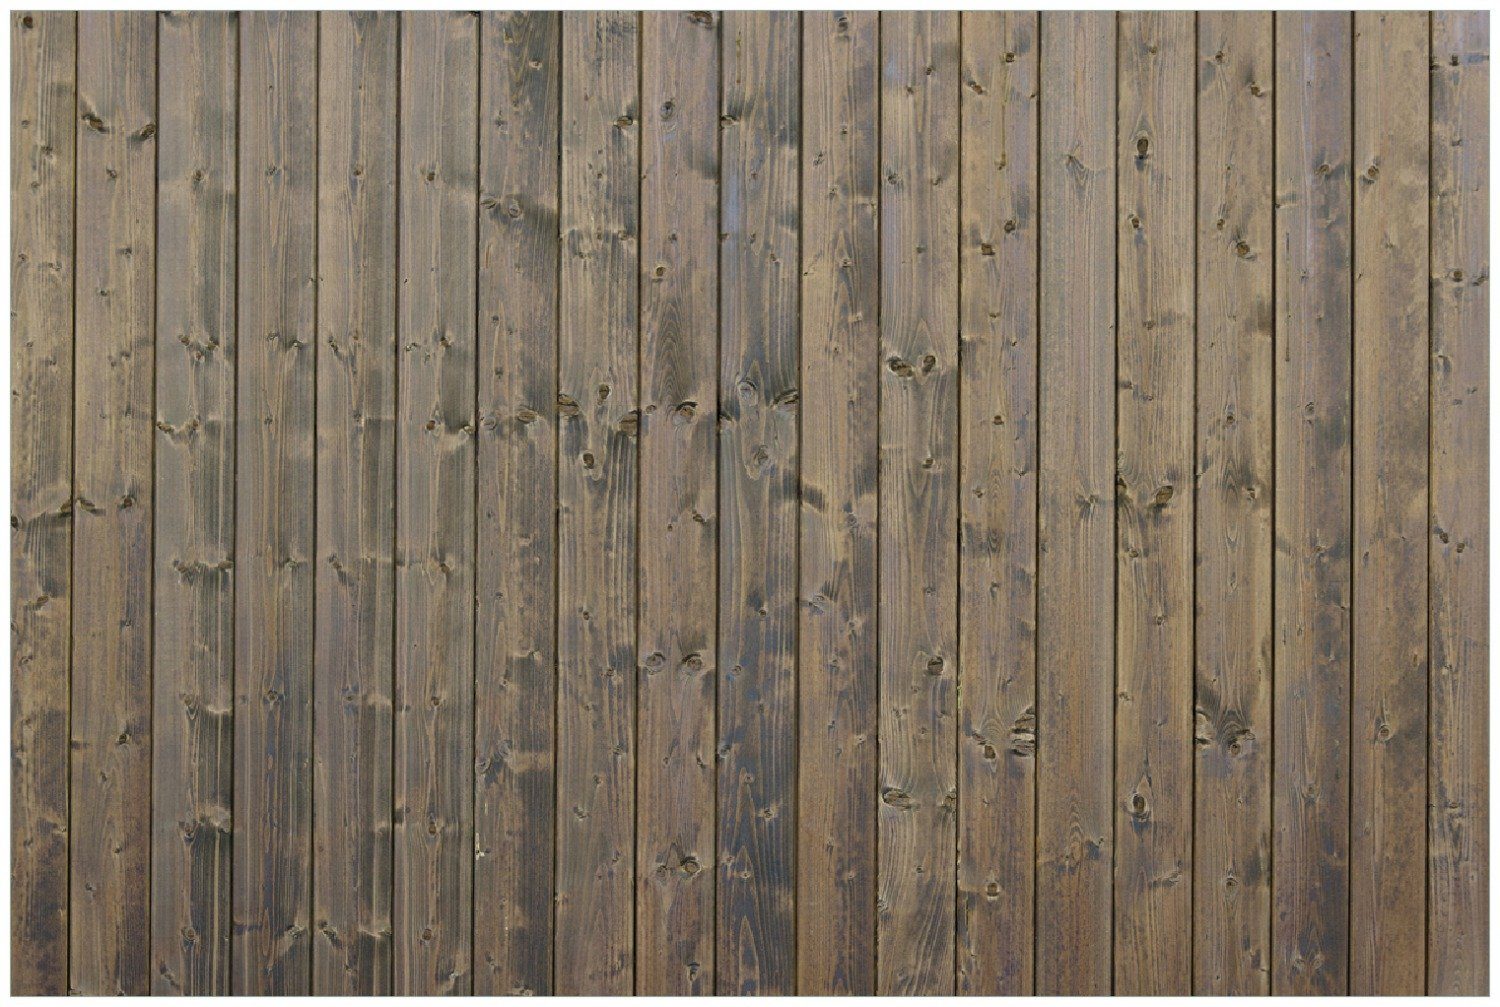 Wallario Poster, Holzpaneelen in grau braun - Holzmuster mit Maserung, in verschiedenen Ausführungen